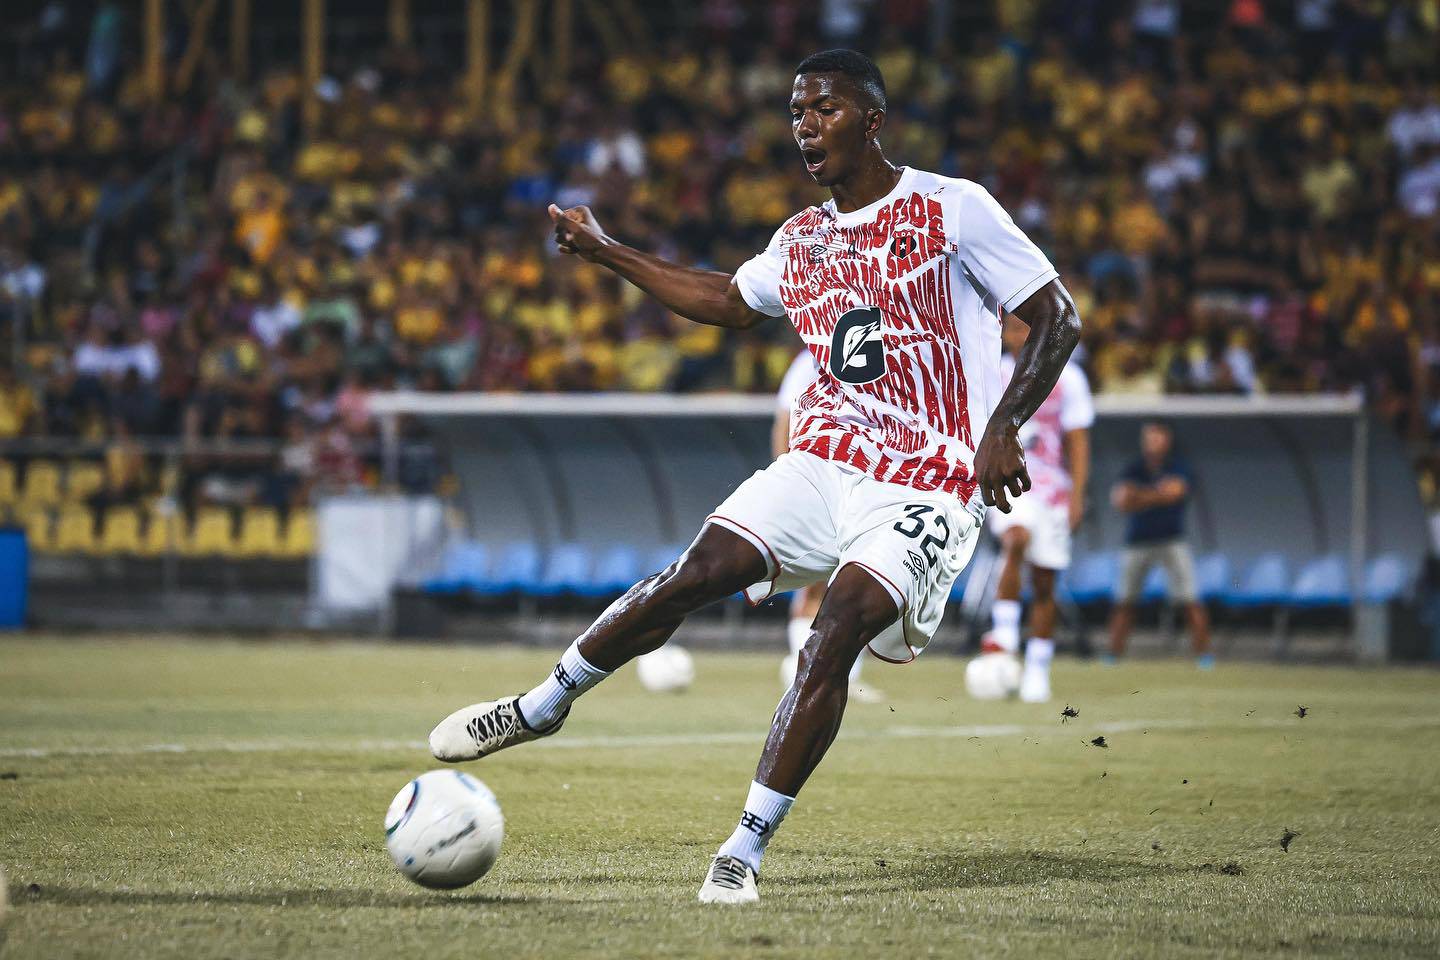 Jeyland Mitchell entró en convocatoria por primera vez con el primer equipo de Liga Deportiva Alajuelense el 26 de marzo. Ese día jugó contra Liberia y a partir de ahí se volvió inamovible con Alexandre Guimaraes.